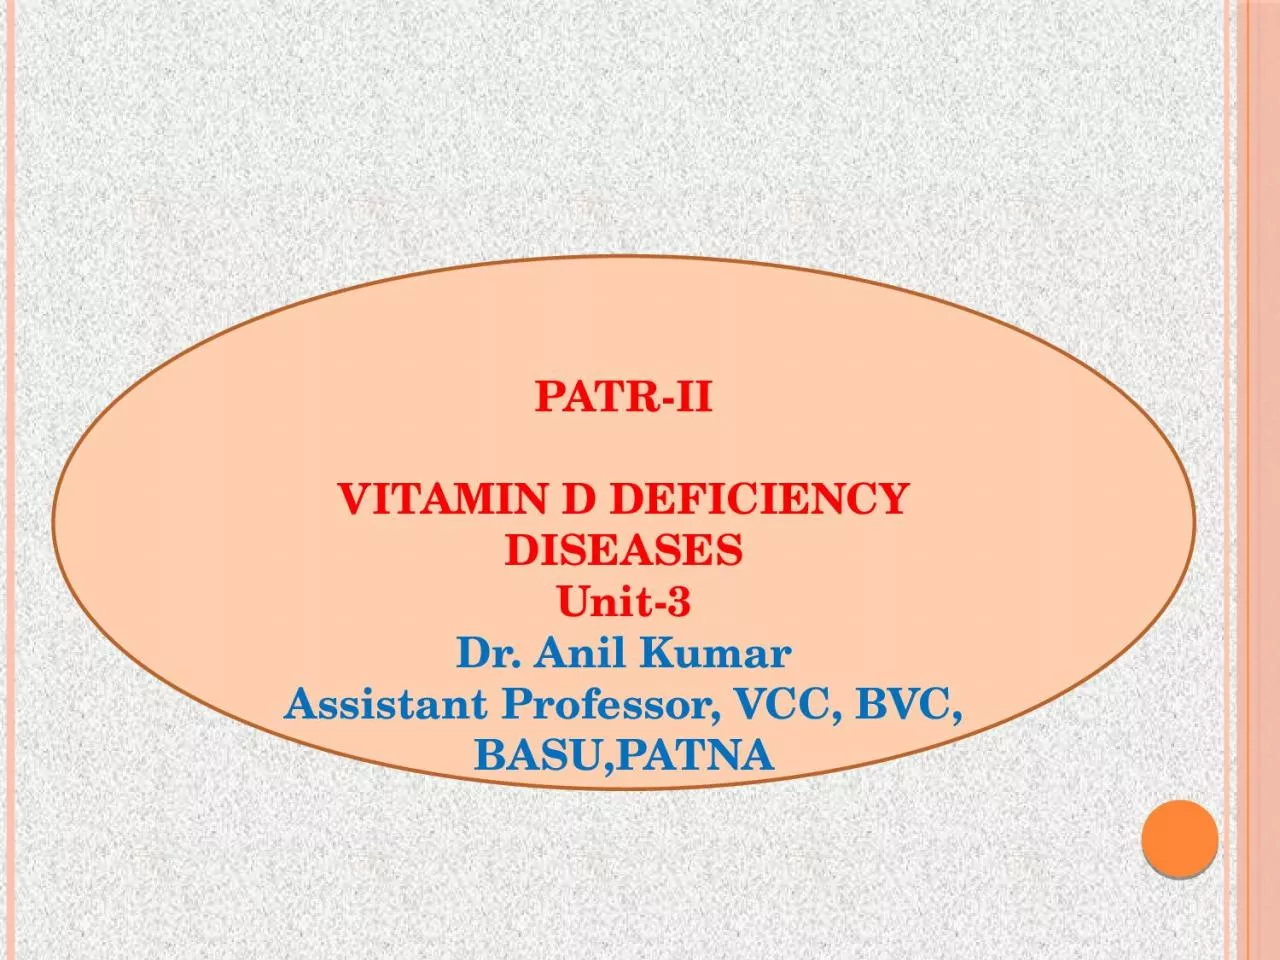 PATR-II VITAMIN D DEFICIENCY DISEASES